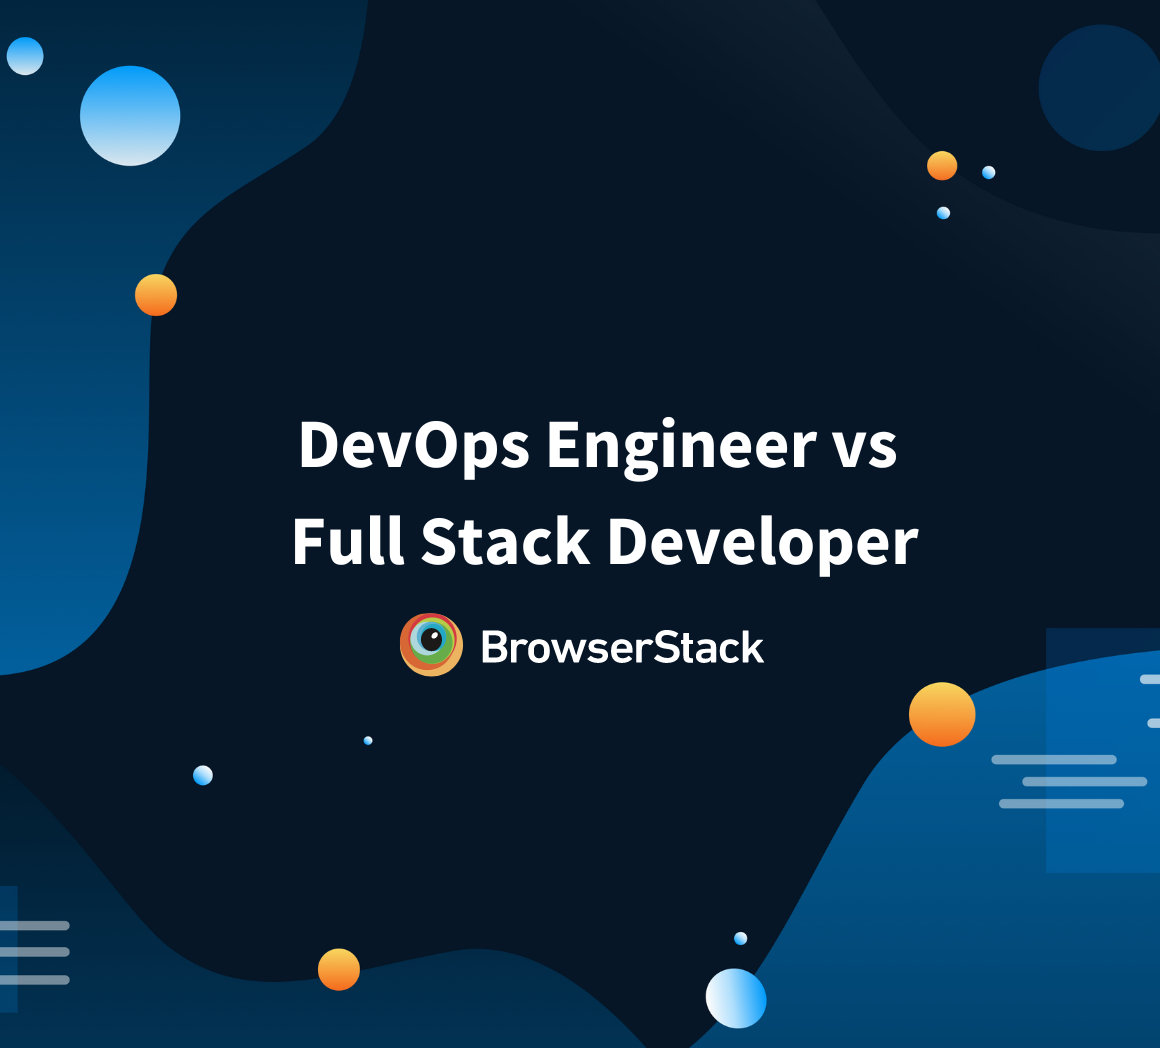 DevOps Engineer vs Full Stack Developer